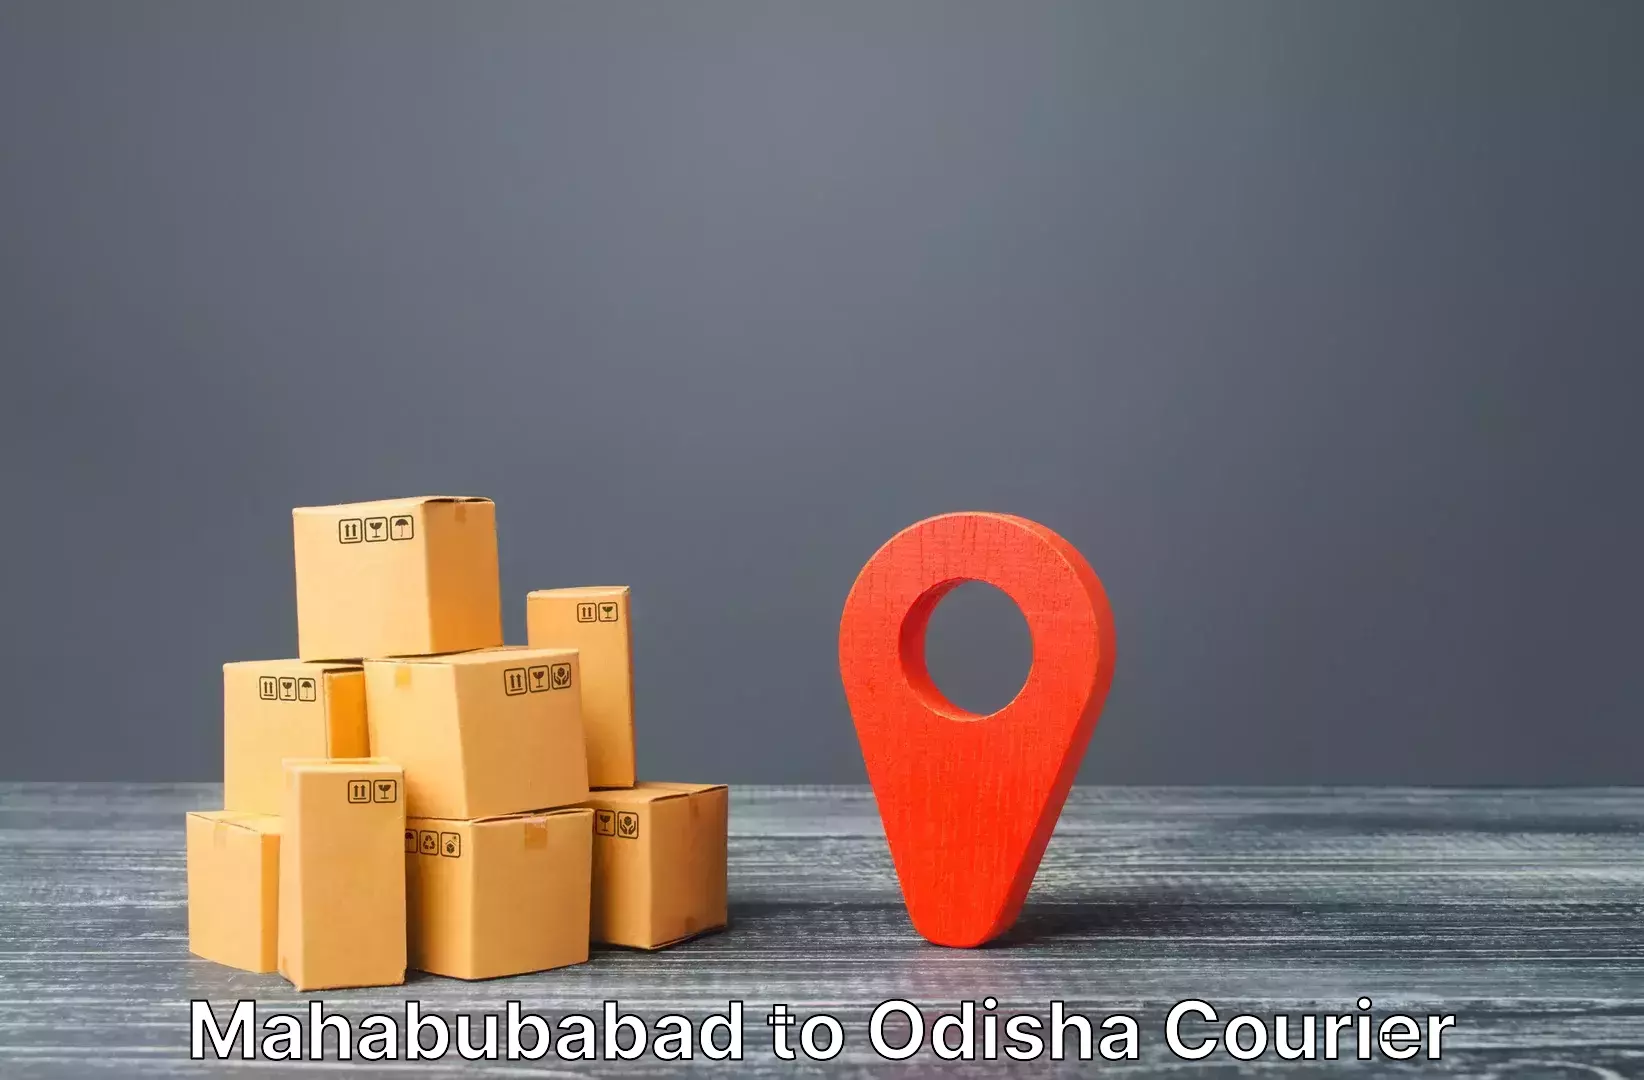 Luggage transport service Mahabubabad to Ghatgaon